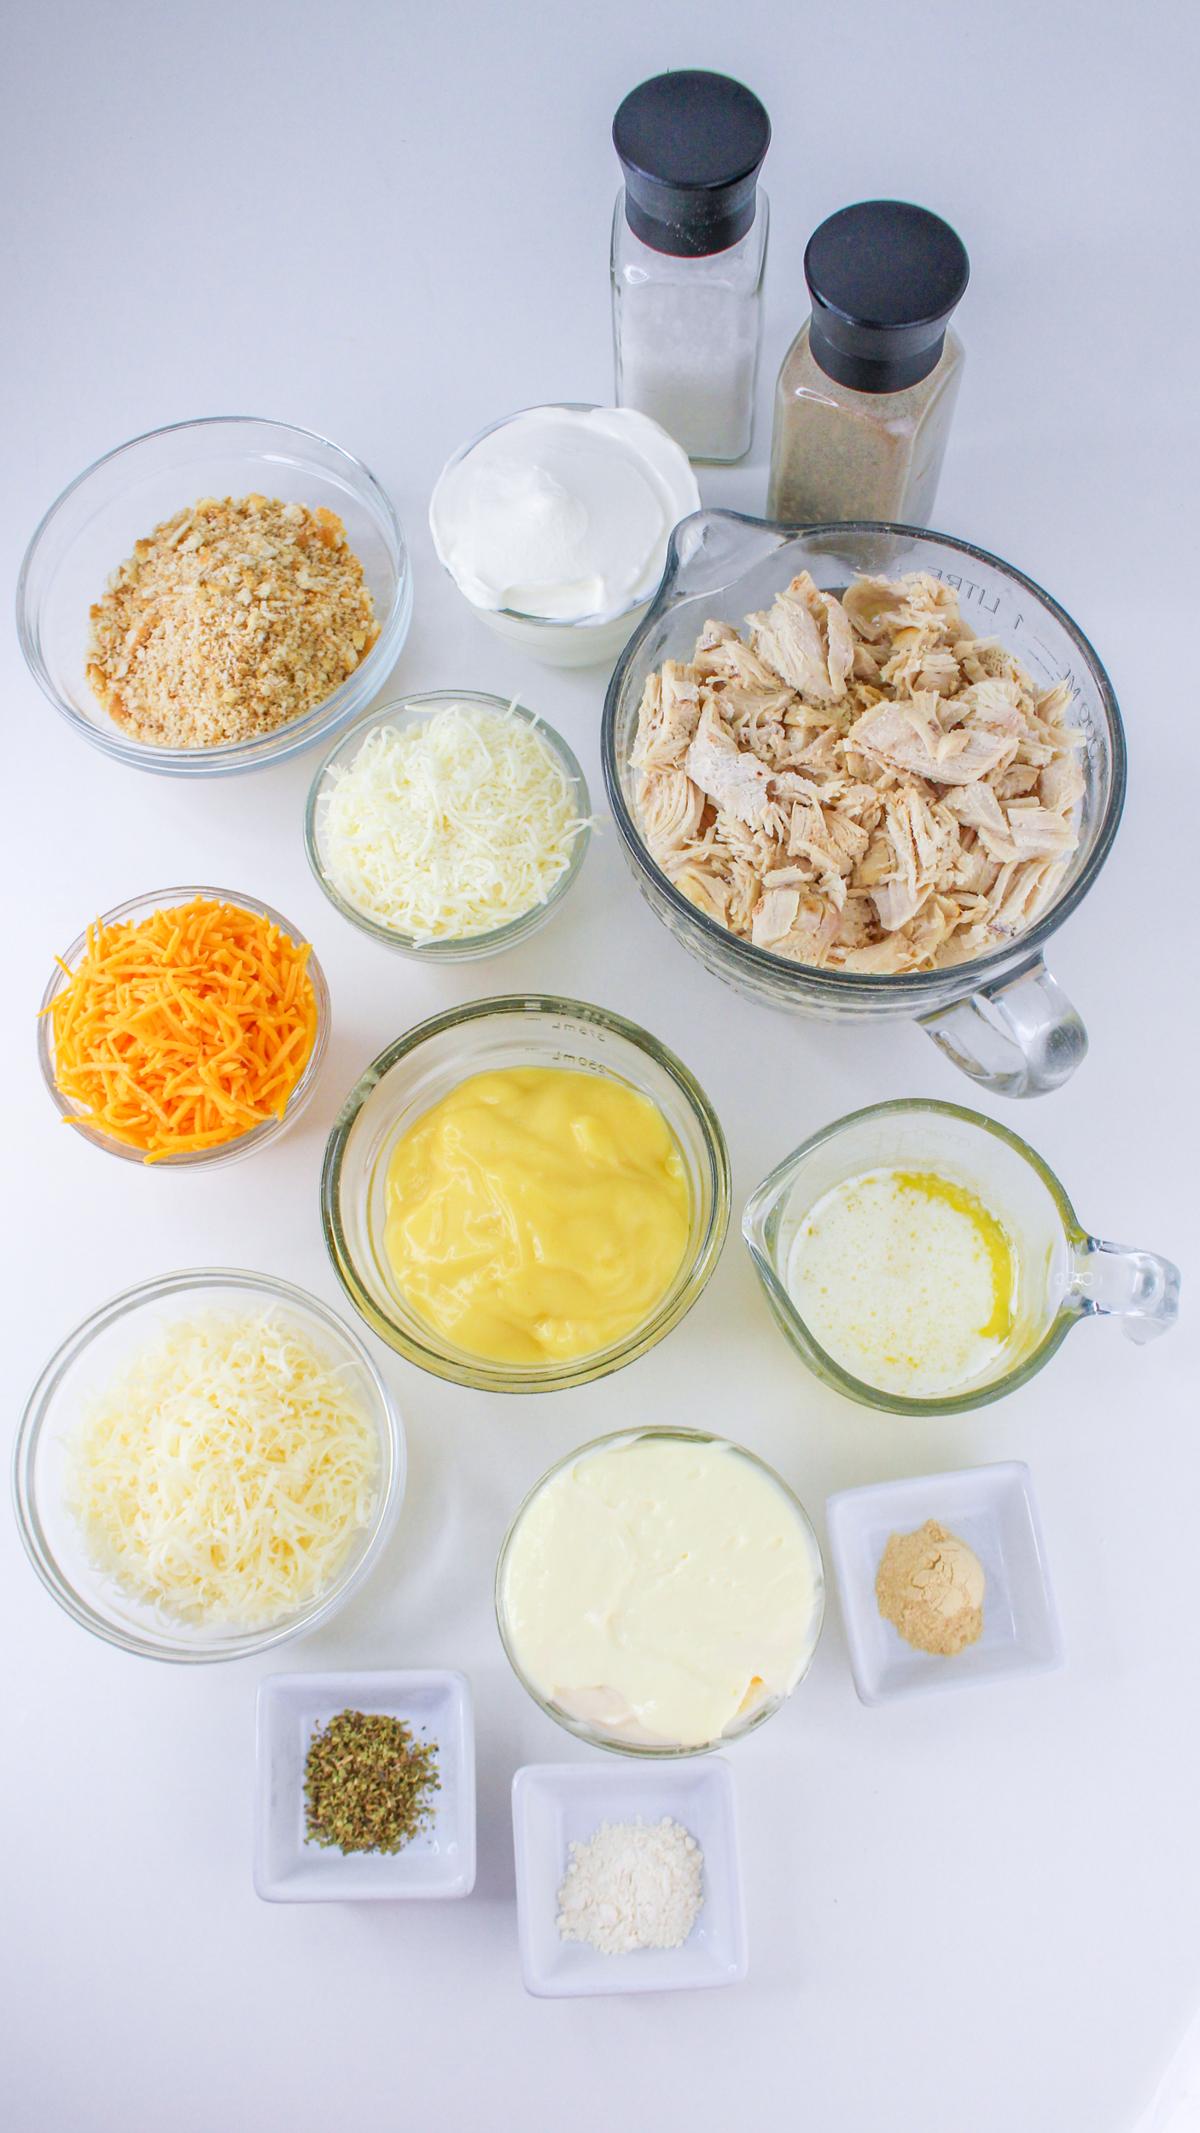 Ingredients for million dollar chicken casserole.